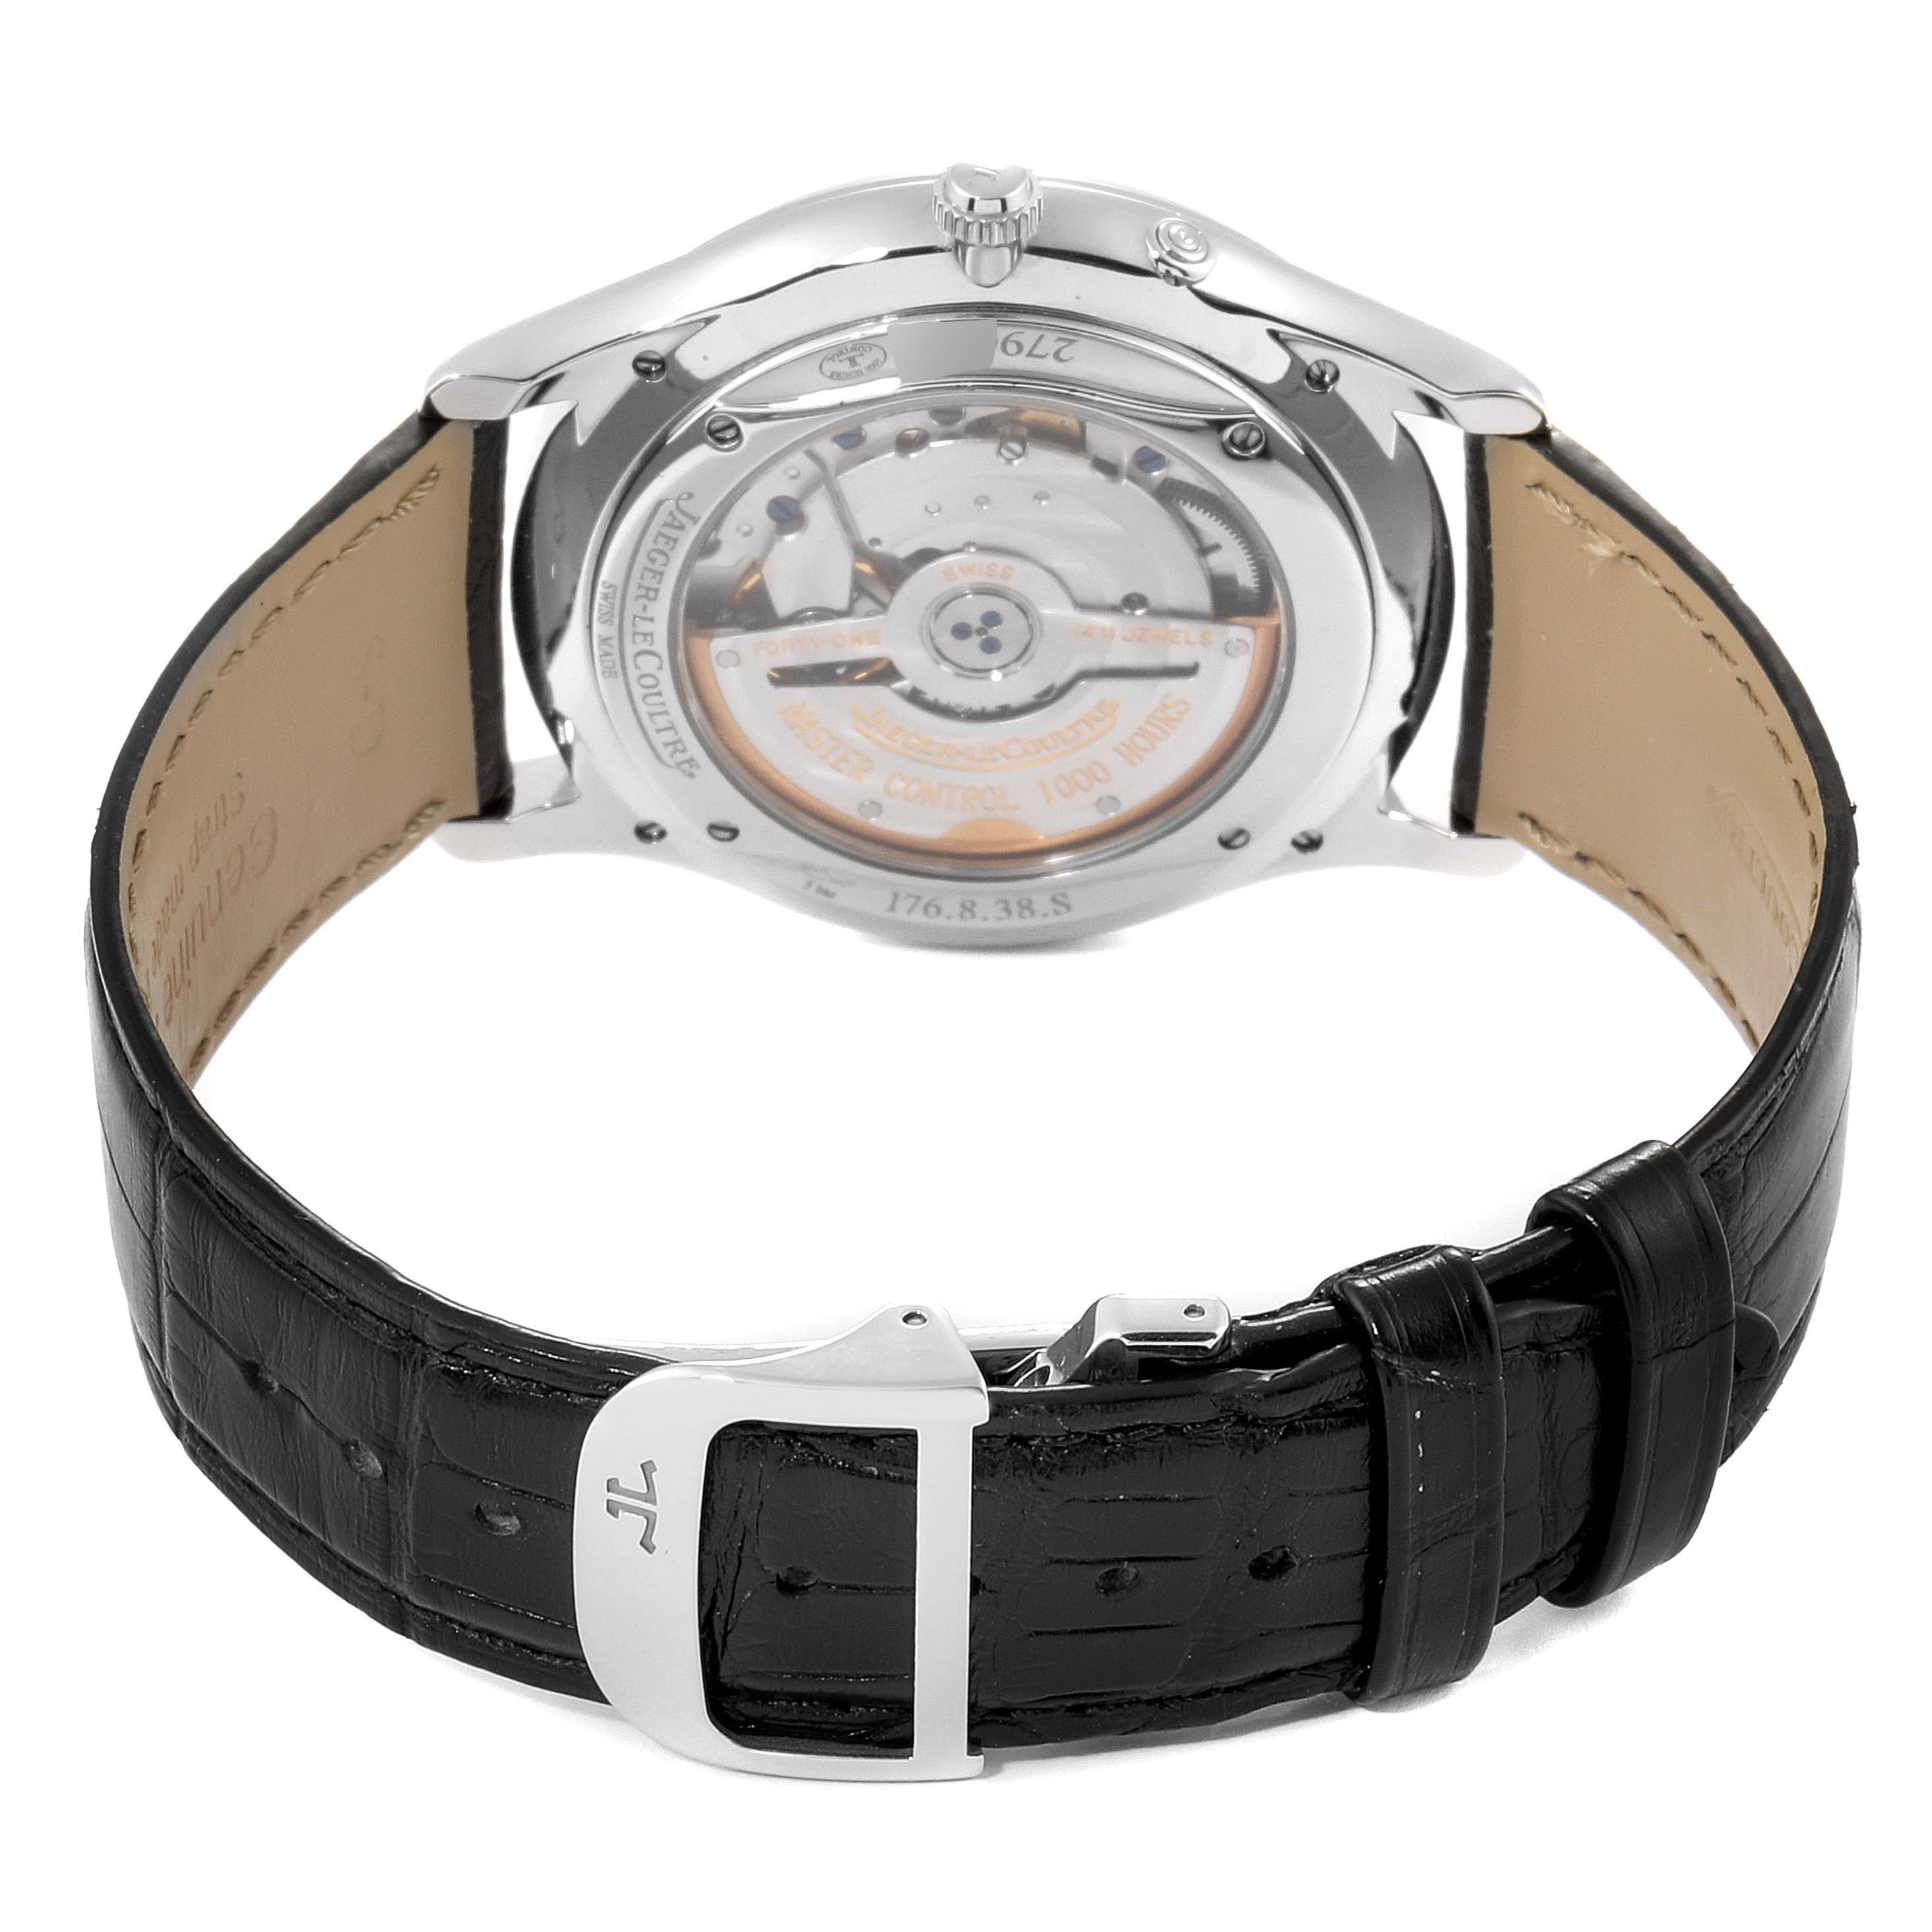 Jaeger Lecoultre Reserve De Marche Ultra Thin Watch 176.8.38.S Q1378420 ...